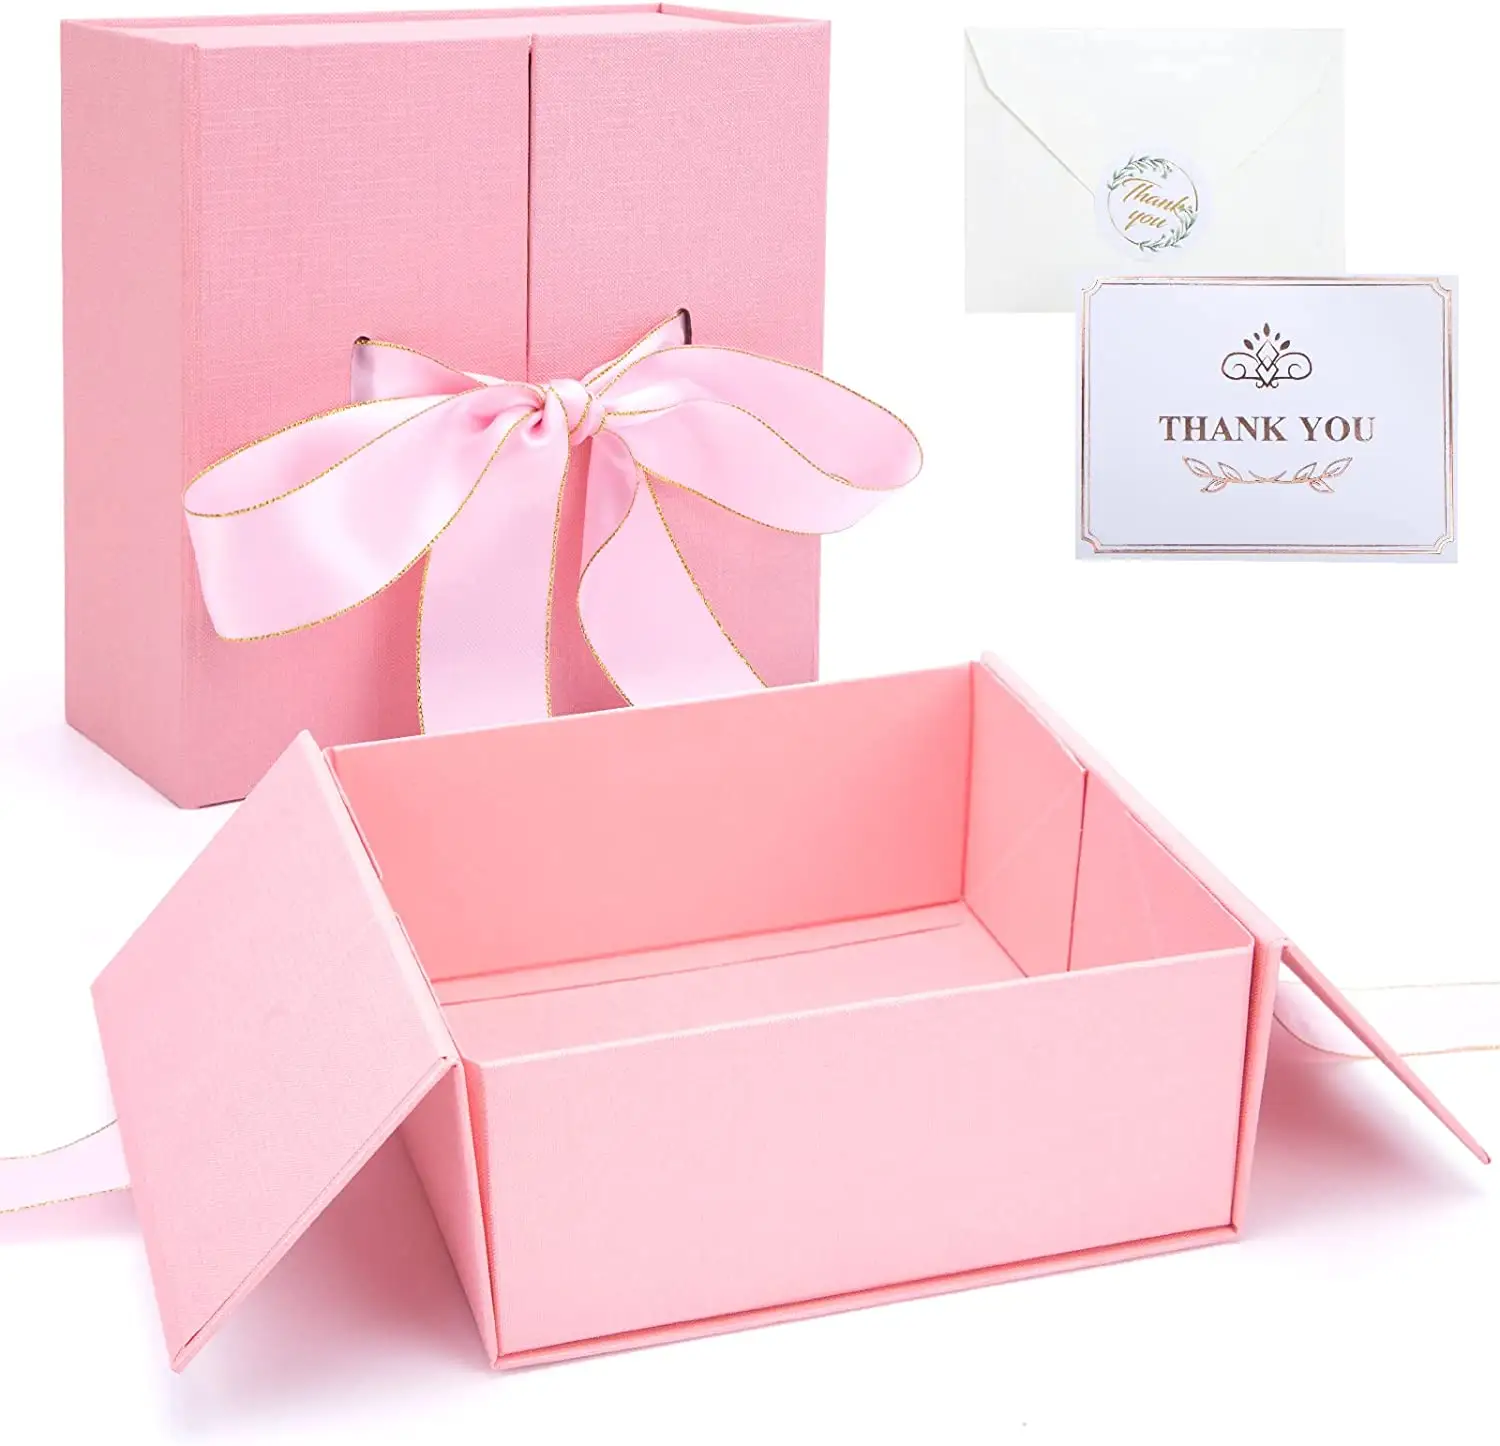 Rosa Geschenk box 8 Zoll große Geschenk box mit Deckel Band quadratische Geschenk box für Hochzeit Geburtstag Jubiläum Valentinstag Baby party